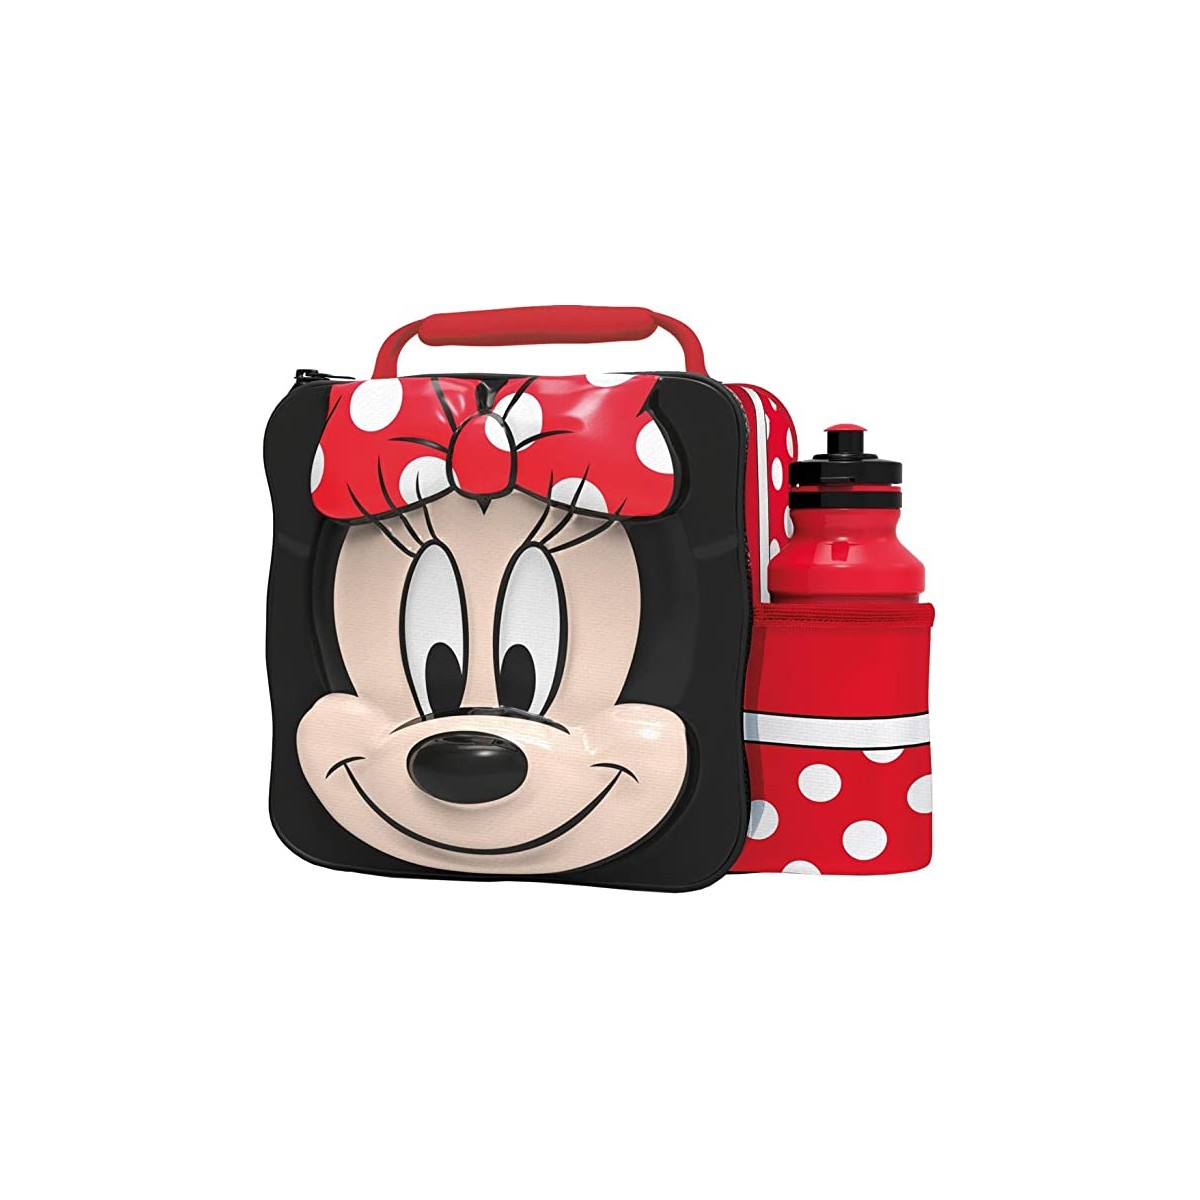 Minnie Mouse borsa termica termica termica termica per il lavoro o il viaggio per adulti riutilizzabili pranzo scatole 